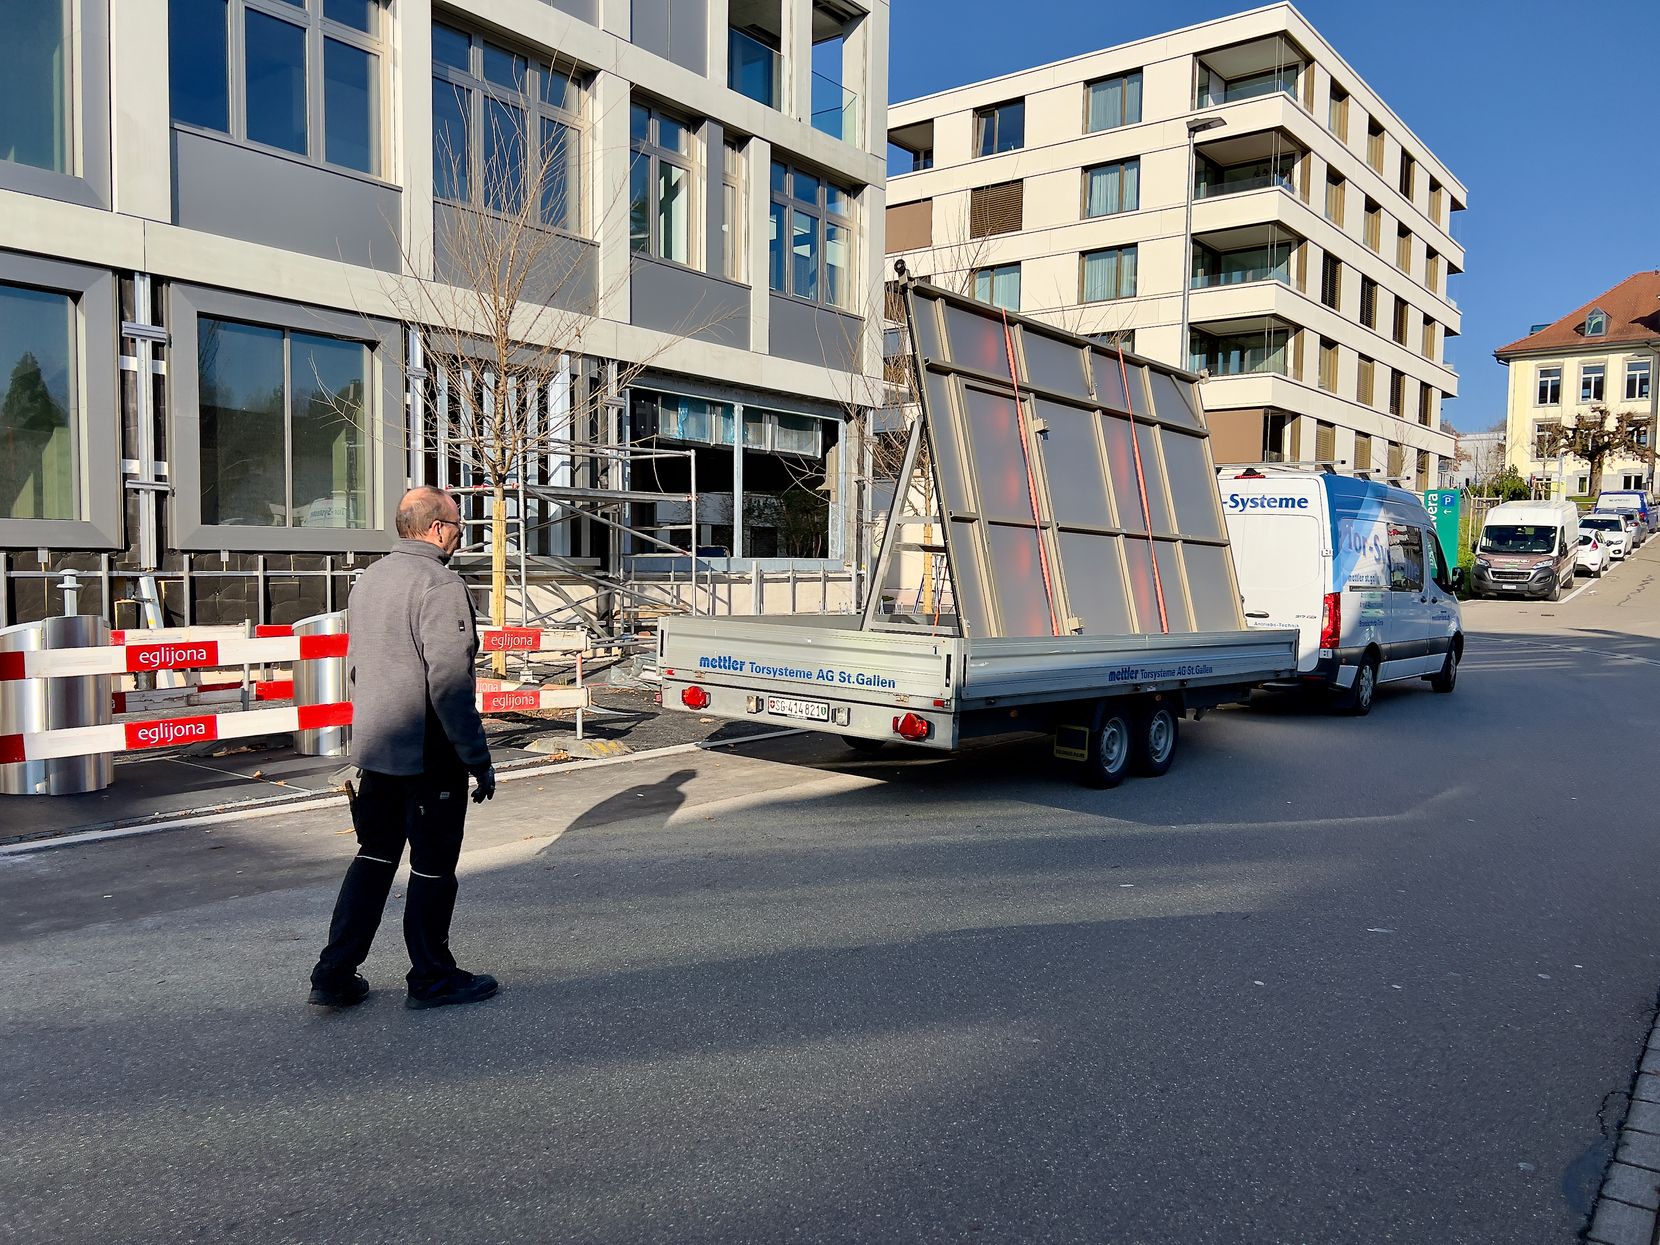 Ein Handwerker steht auf der Strasse und hilft seinem Kollegen einen Lieferwagen mit Anhänger zu manövrieren. Im Hintergrund sind zwei mehrstöckige Neubauten zu sehen.